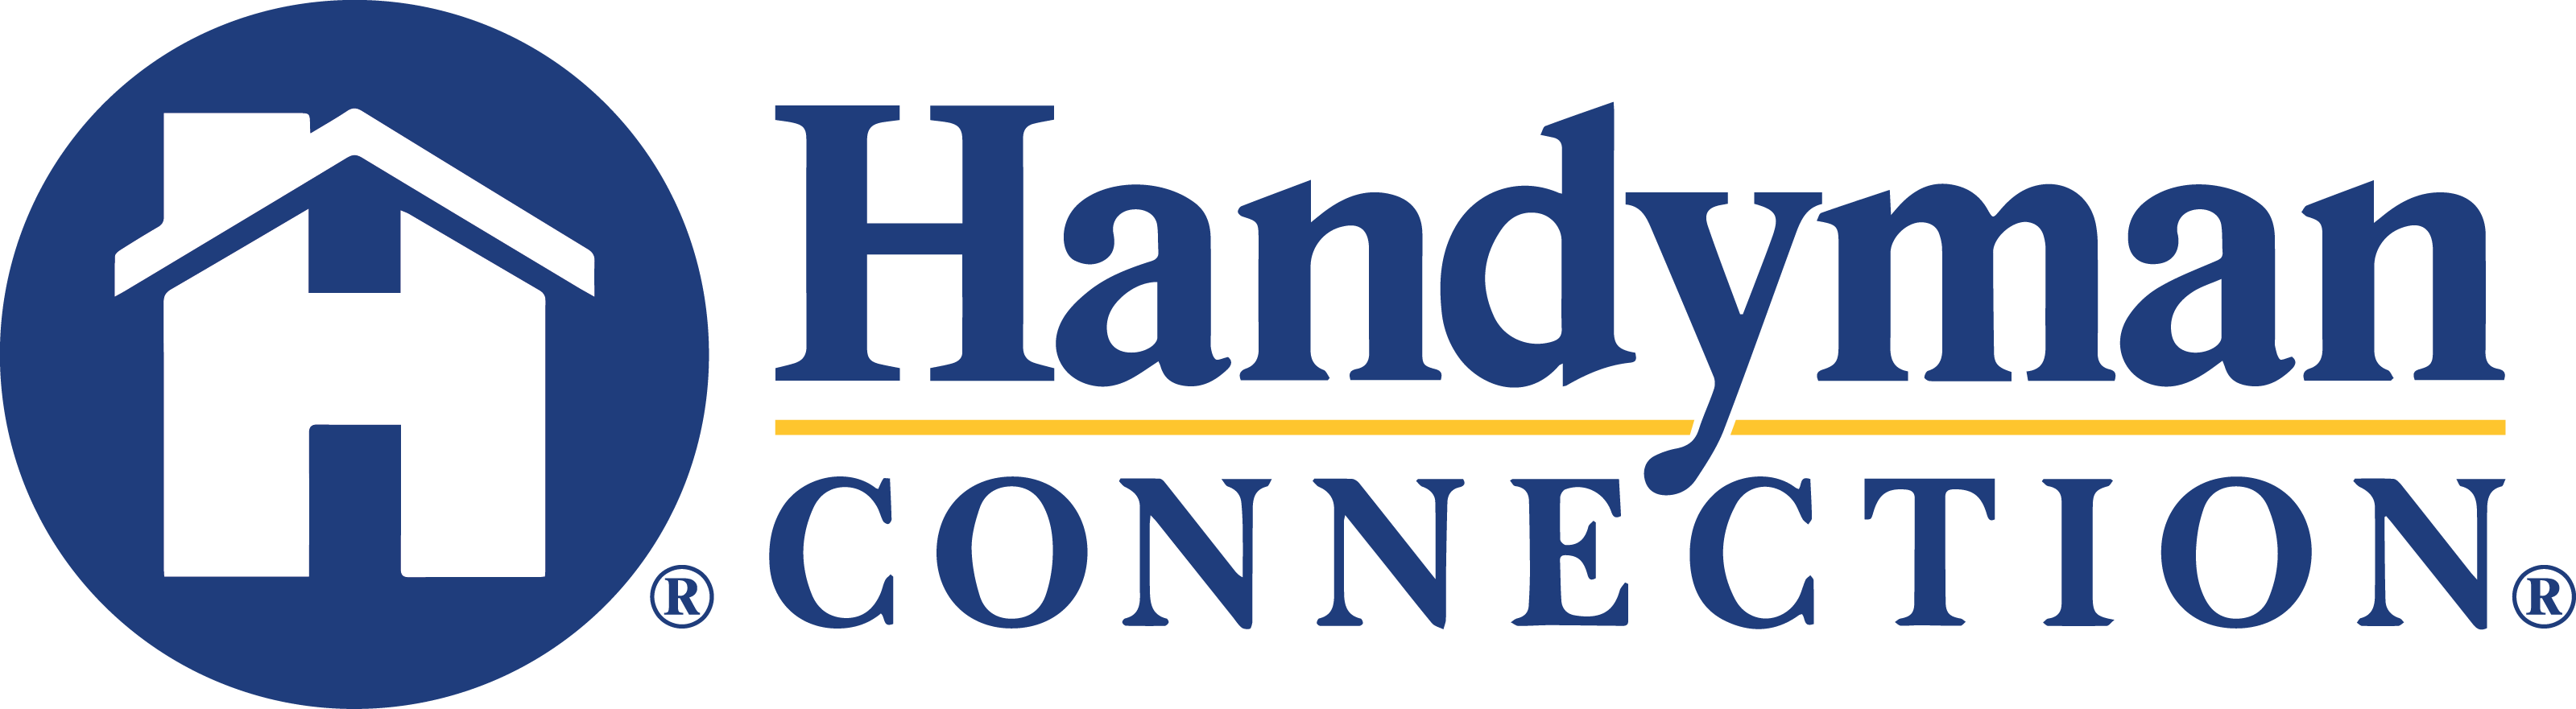 https://handymanconnection.com/winter-park/wp-content/uploads/sites/58/2021/06/HandymanConnection-logo-2.png